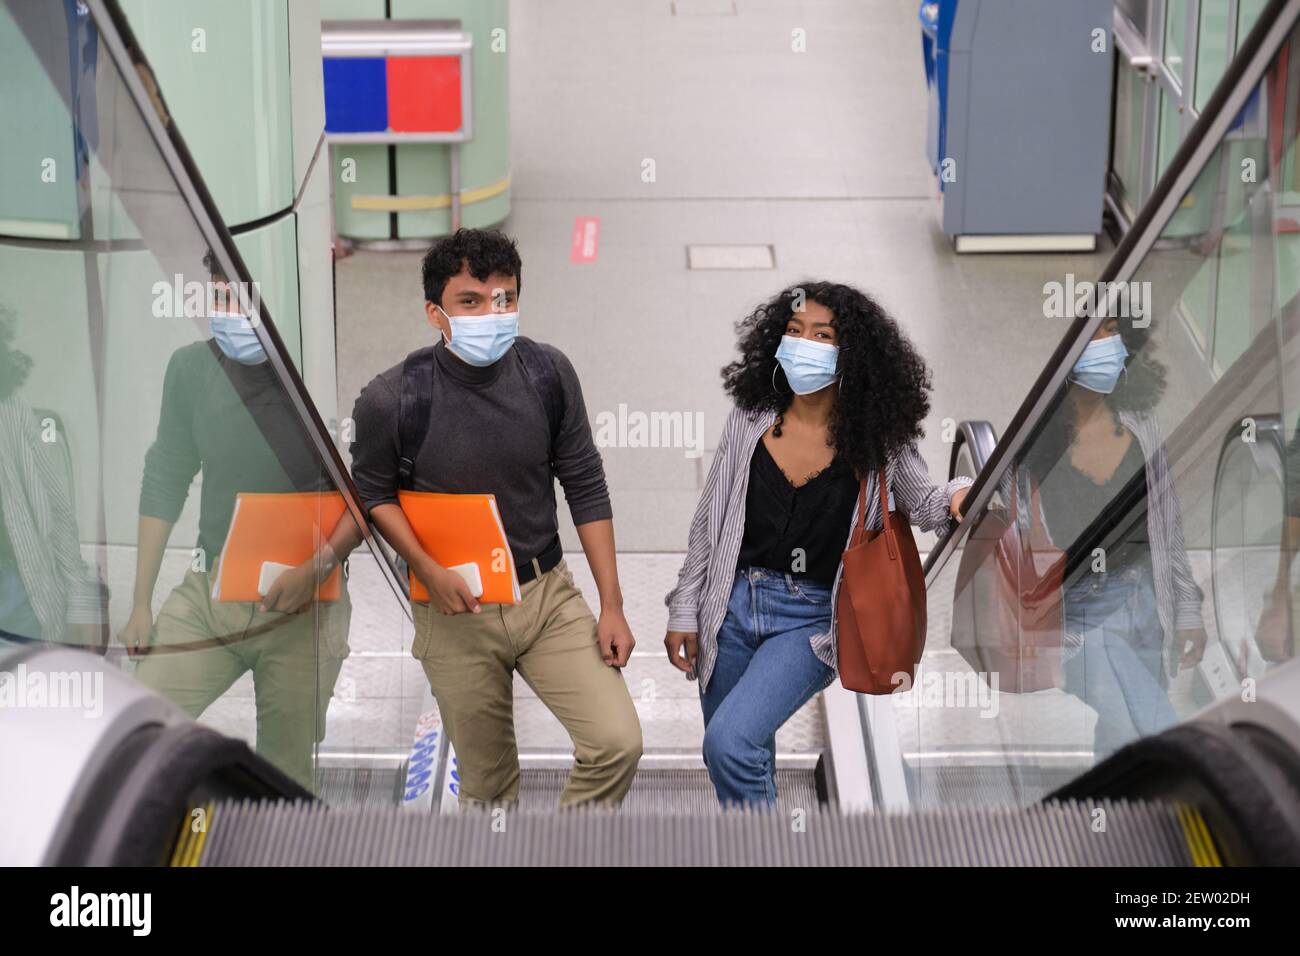 Ein junges lateinisches Paar, das eine Gesichtsmaske trägt, geht in die Rolltreppen des Bahnhofs oder der U-Bahn-Station. Neu normal bei öffentlichen Verkehrsmitteln. Stockfoto